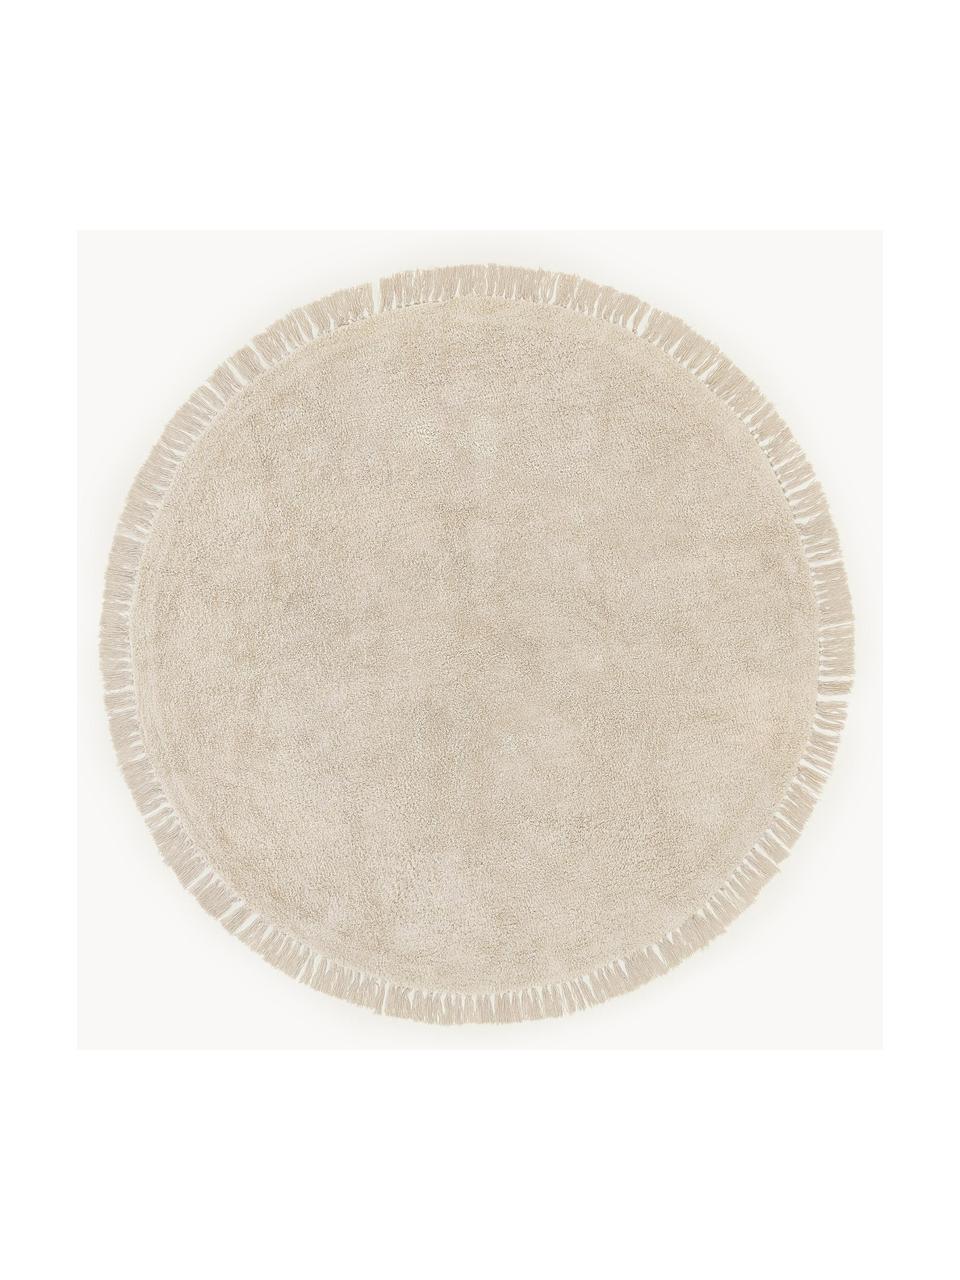 Alfombra redonda artesanal de algodón Daya, Beige claro, Ø 110 cm (Tamaño S)